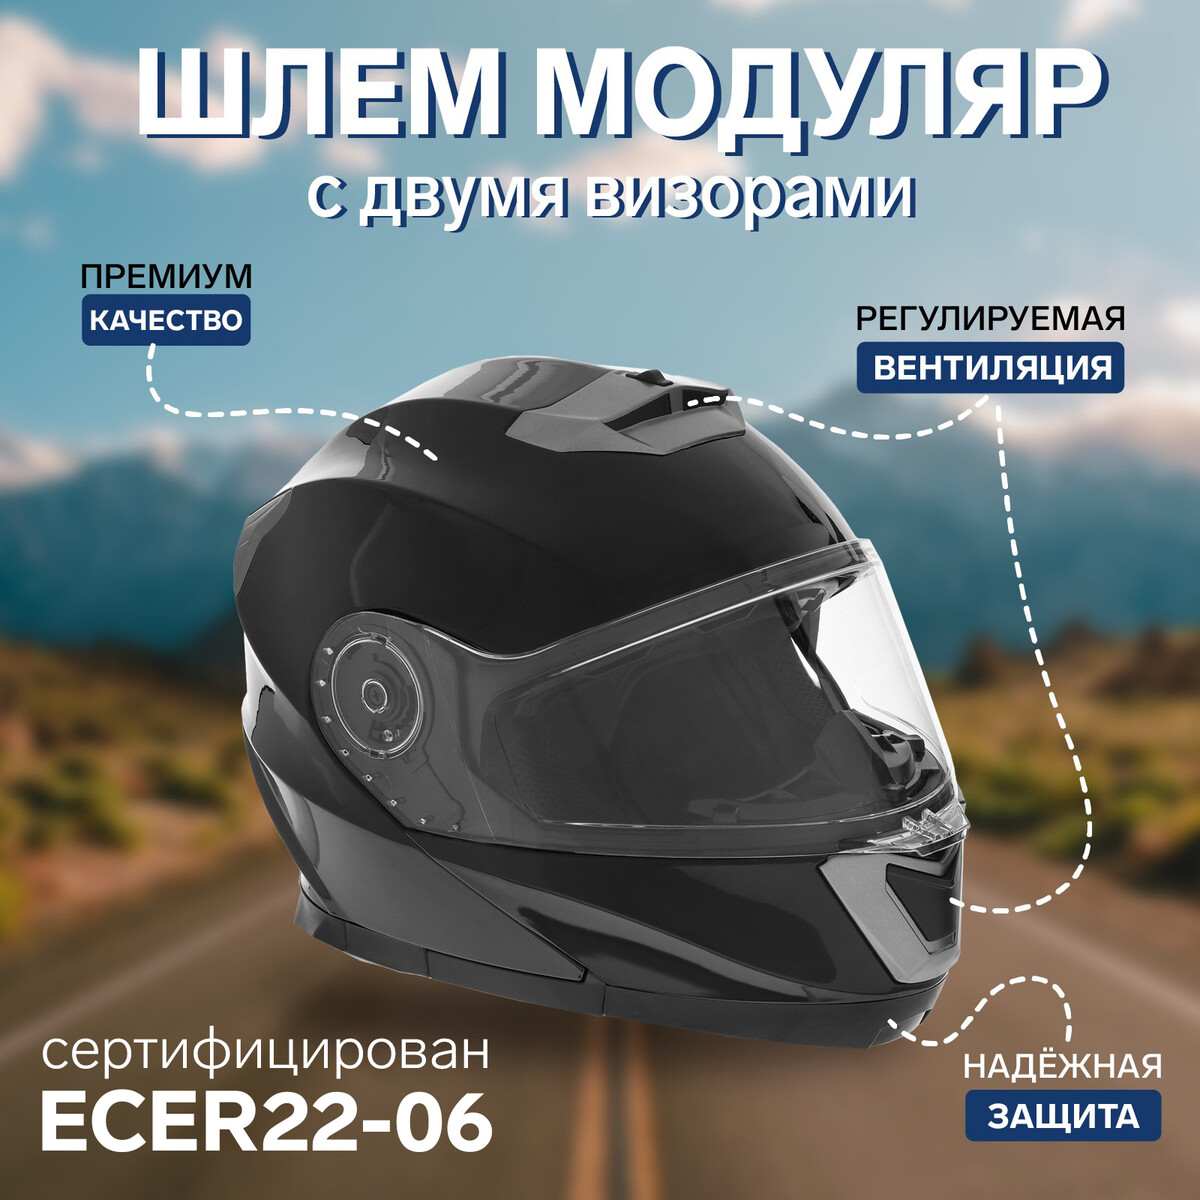 Шлем модуляр с двумя визорами, размер xl (60-61), модель - bld-160e, черный глянцевый No brand 010405997: купить за 13100 руб в интернет магазине с бесплатной доставкой